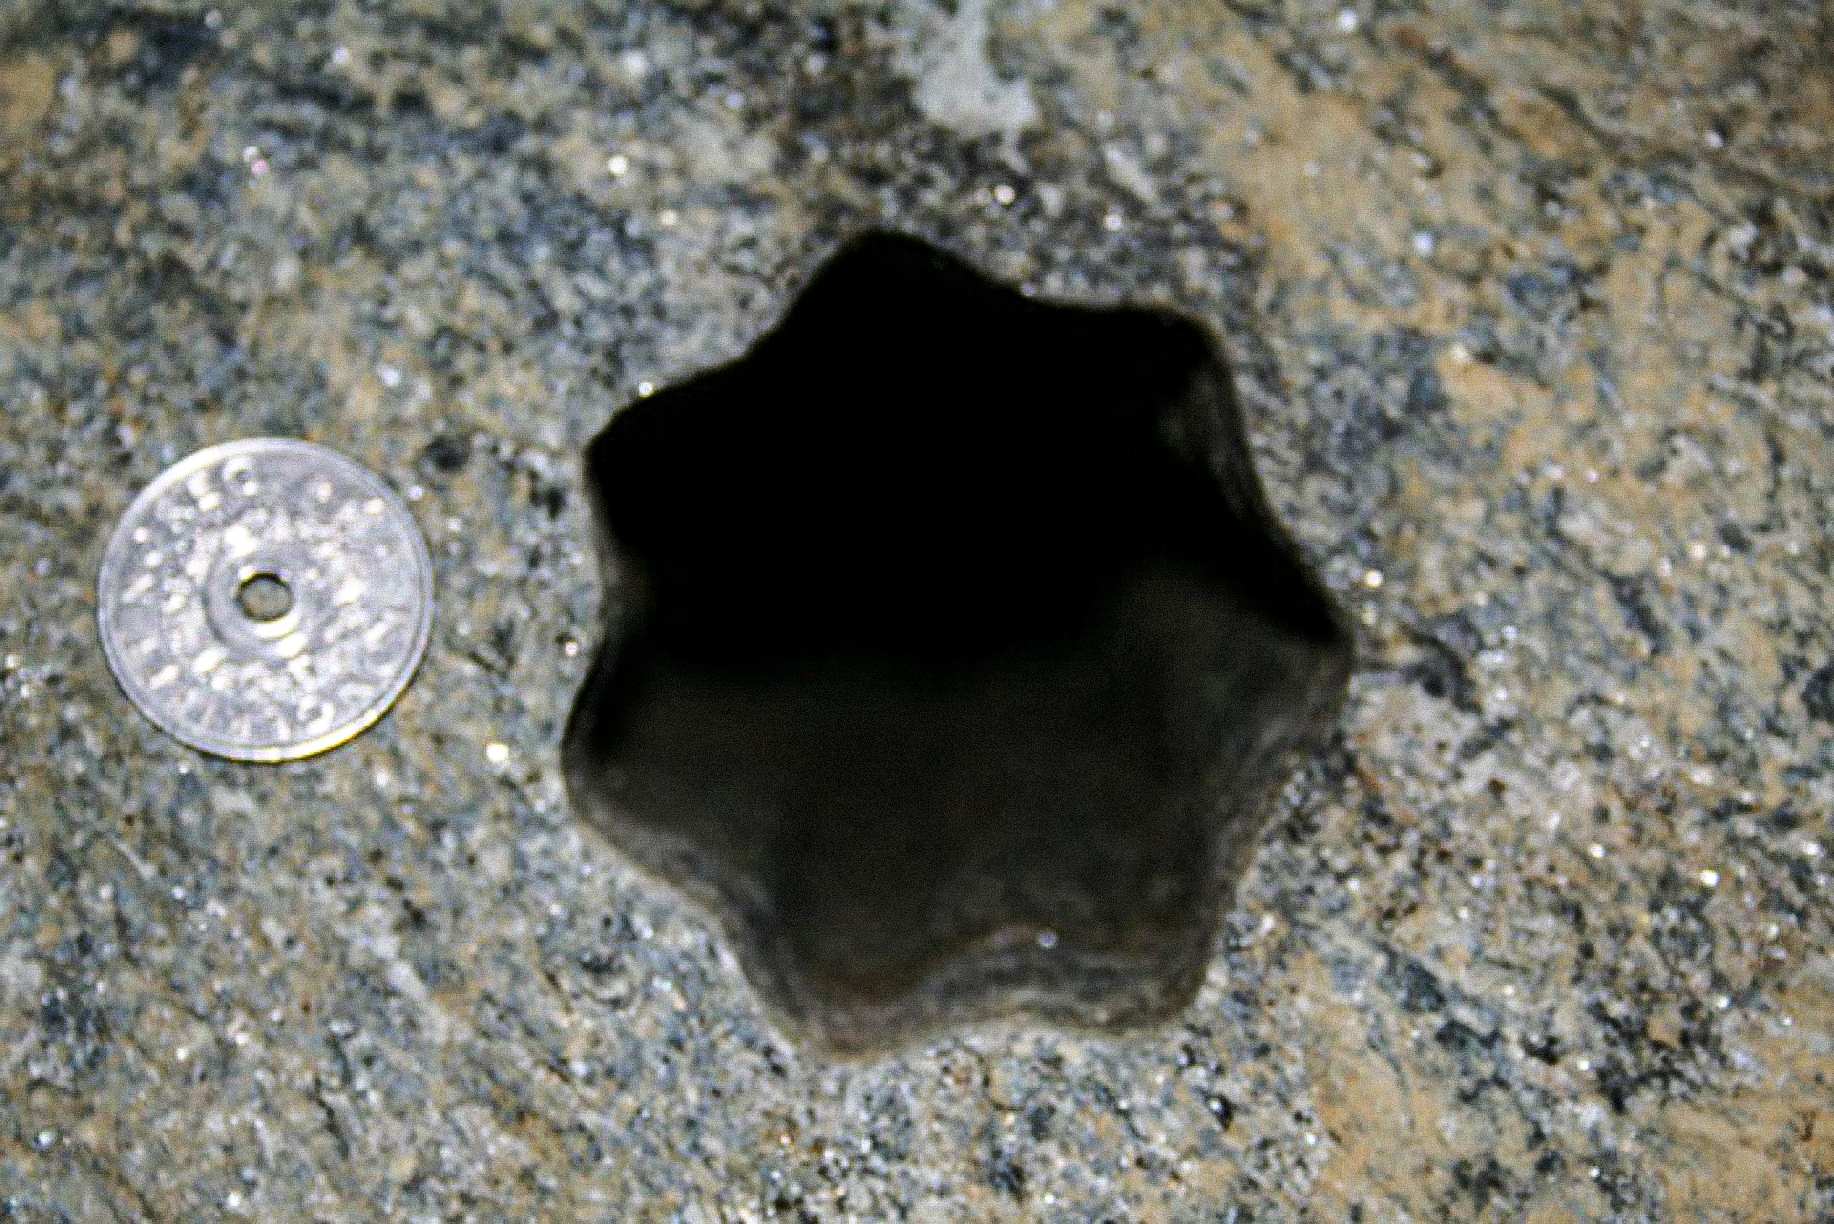 Este agujero en forma de estrella (con siete lados) fue encontrado por contratistas el viernes 30 de noviembre de 2007 en Volda, Noruega. La moneda de 5 coronas noruegas tiene 25 mm de diámetro. El agujero es de aproximadamente 65 - 70 mm de diámetro.